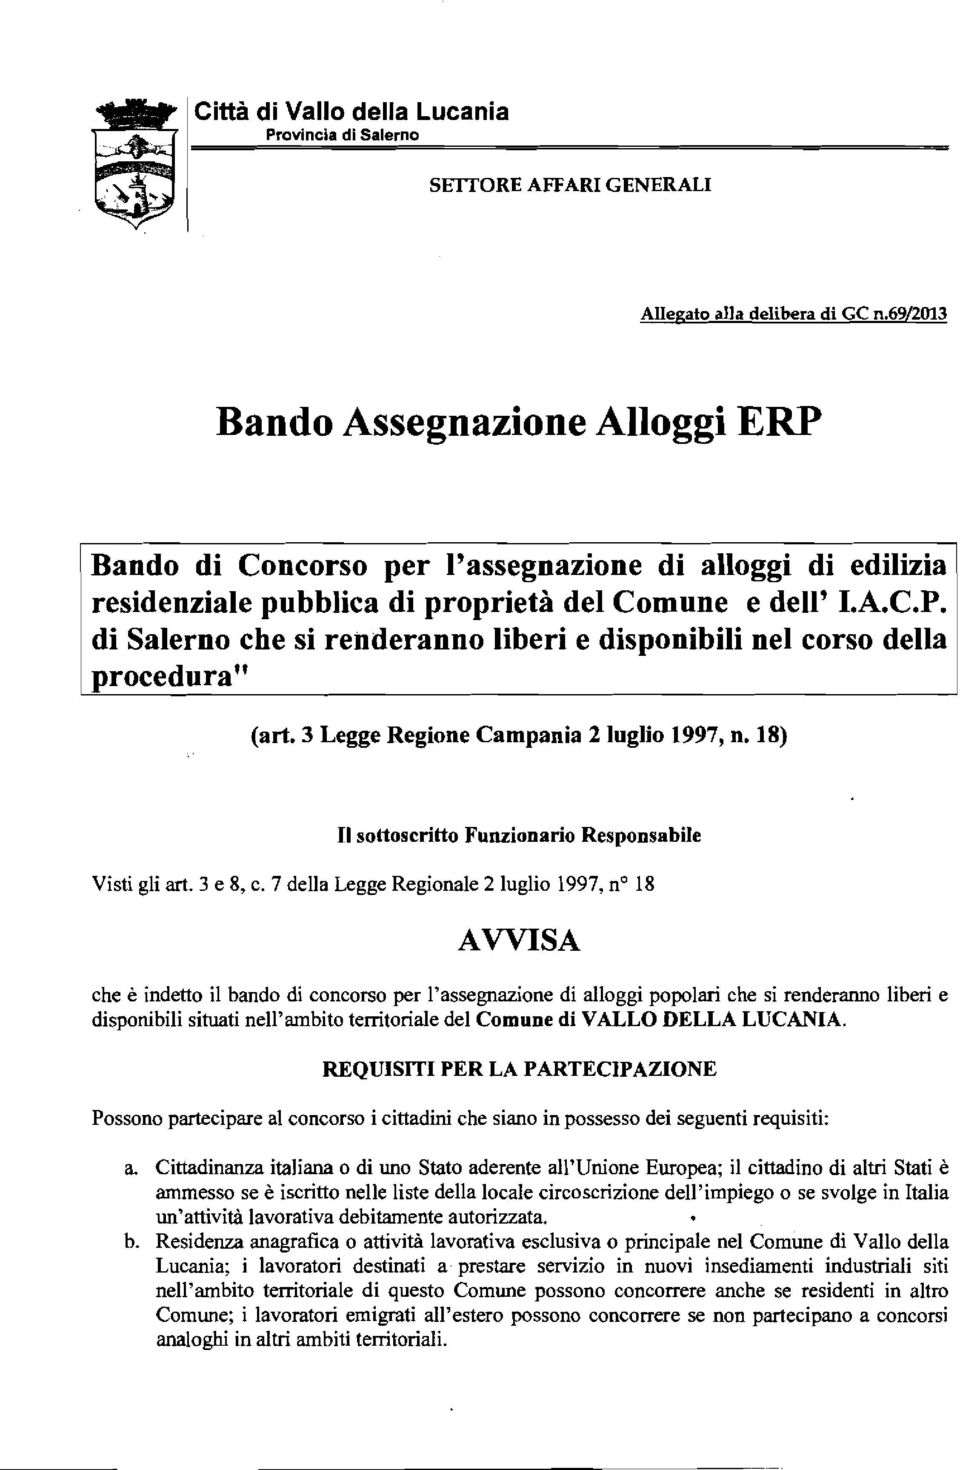 3 Legge Regione Campania 2 luglio 1997, n. 18) n sottoscritto Funzionario Responsabile Visti gli art. 3 e 8, c. 7 della Legge Regionale 2 luglio 1997, n?